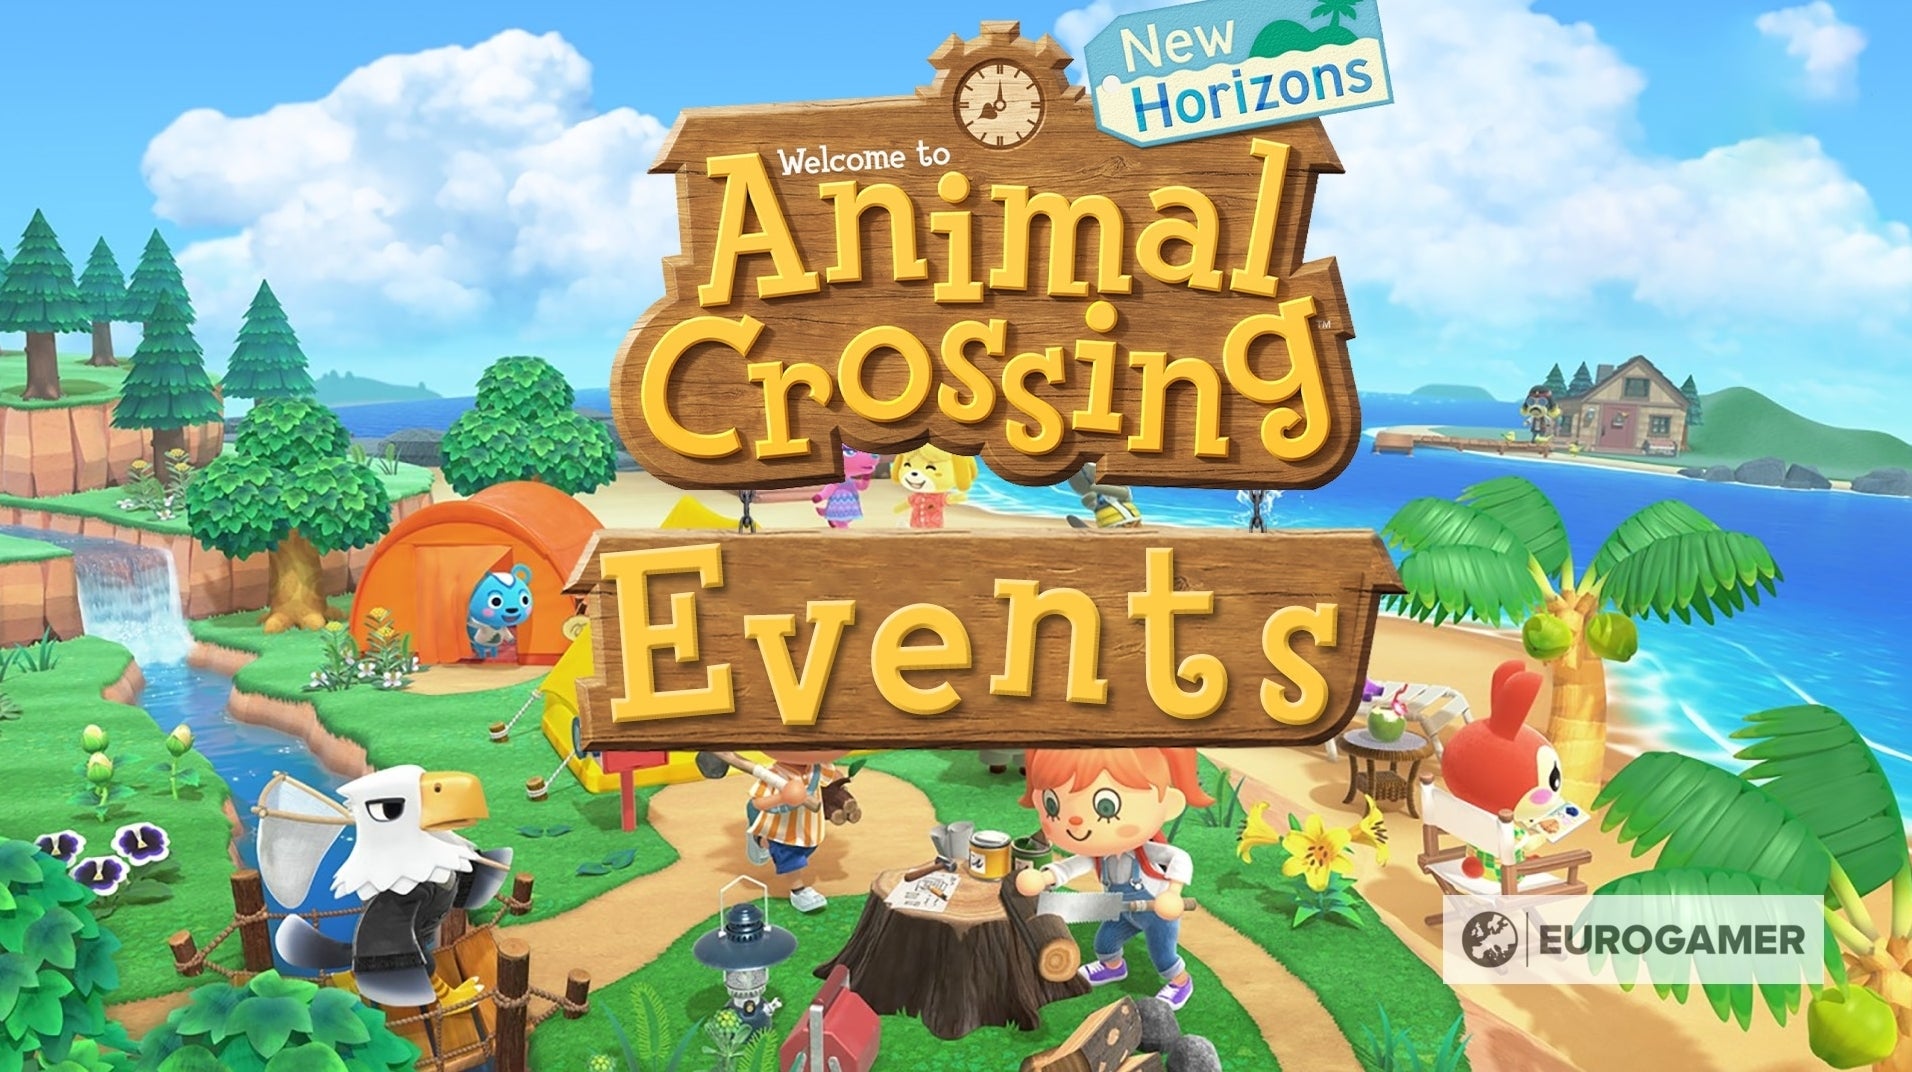 Bilder zu Animal Crossing: New Horizons - Events, Feiertage und spezielle Ereignisse